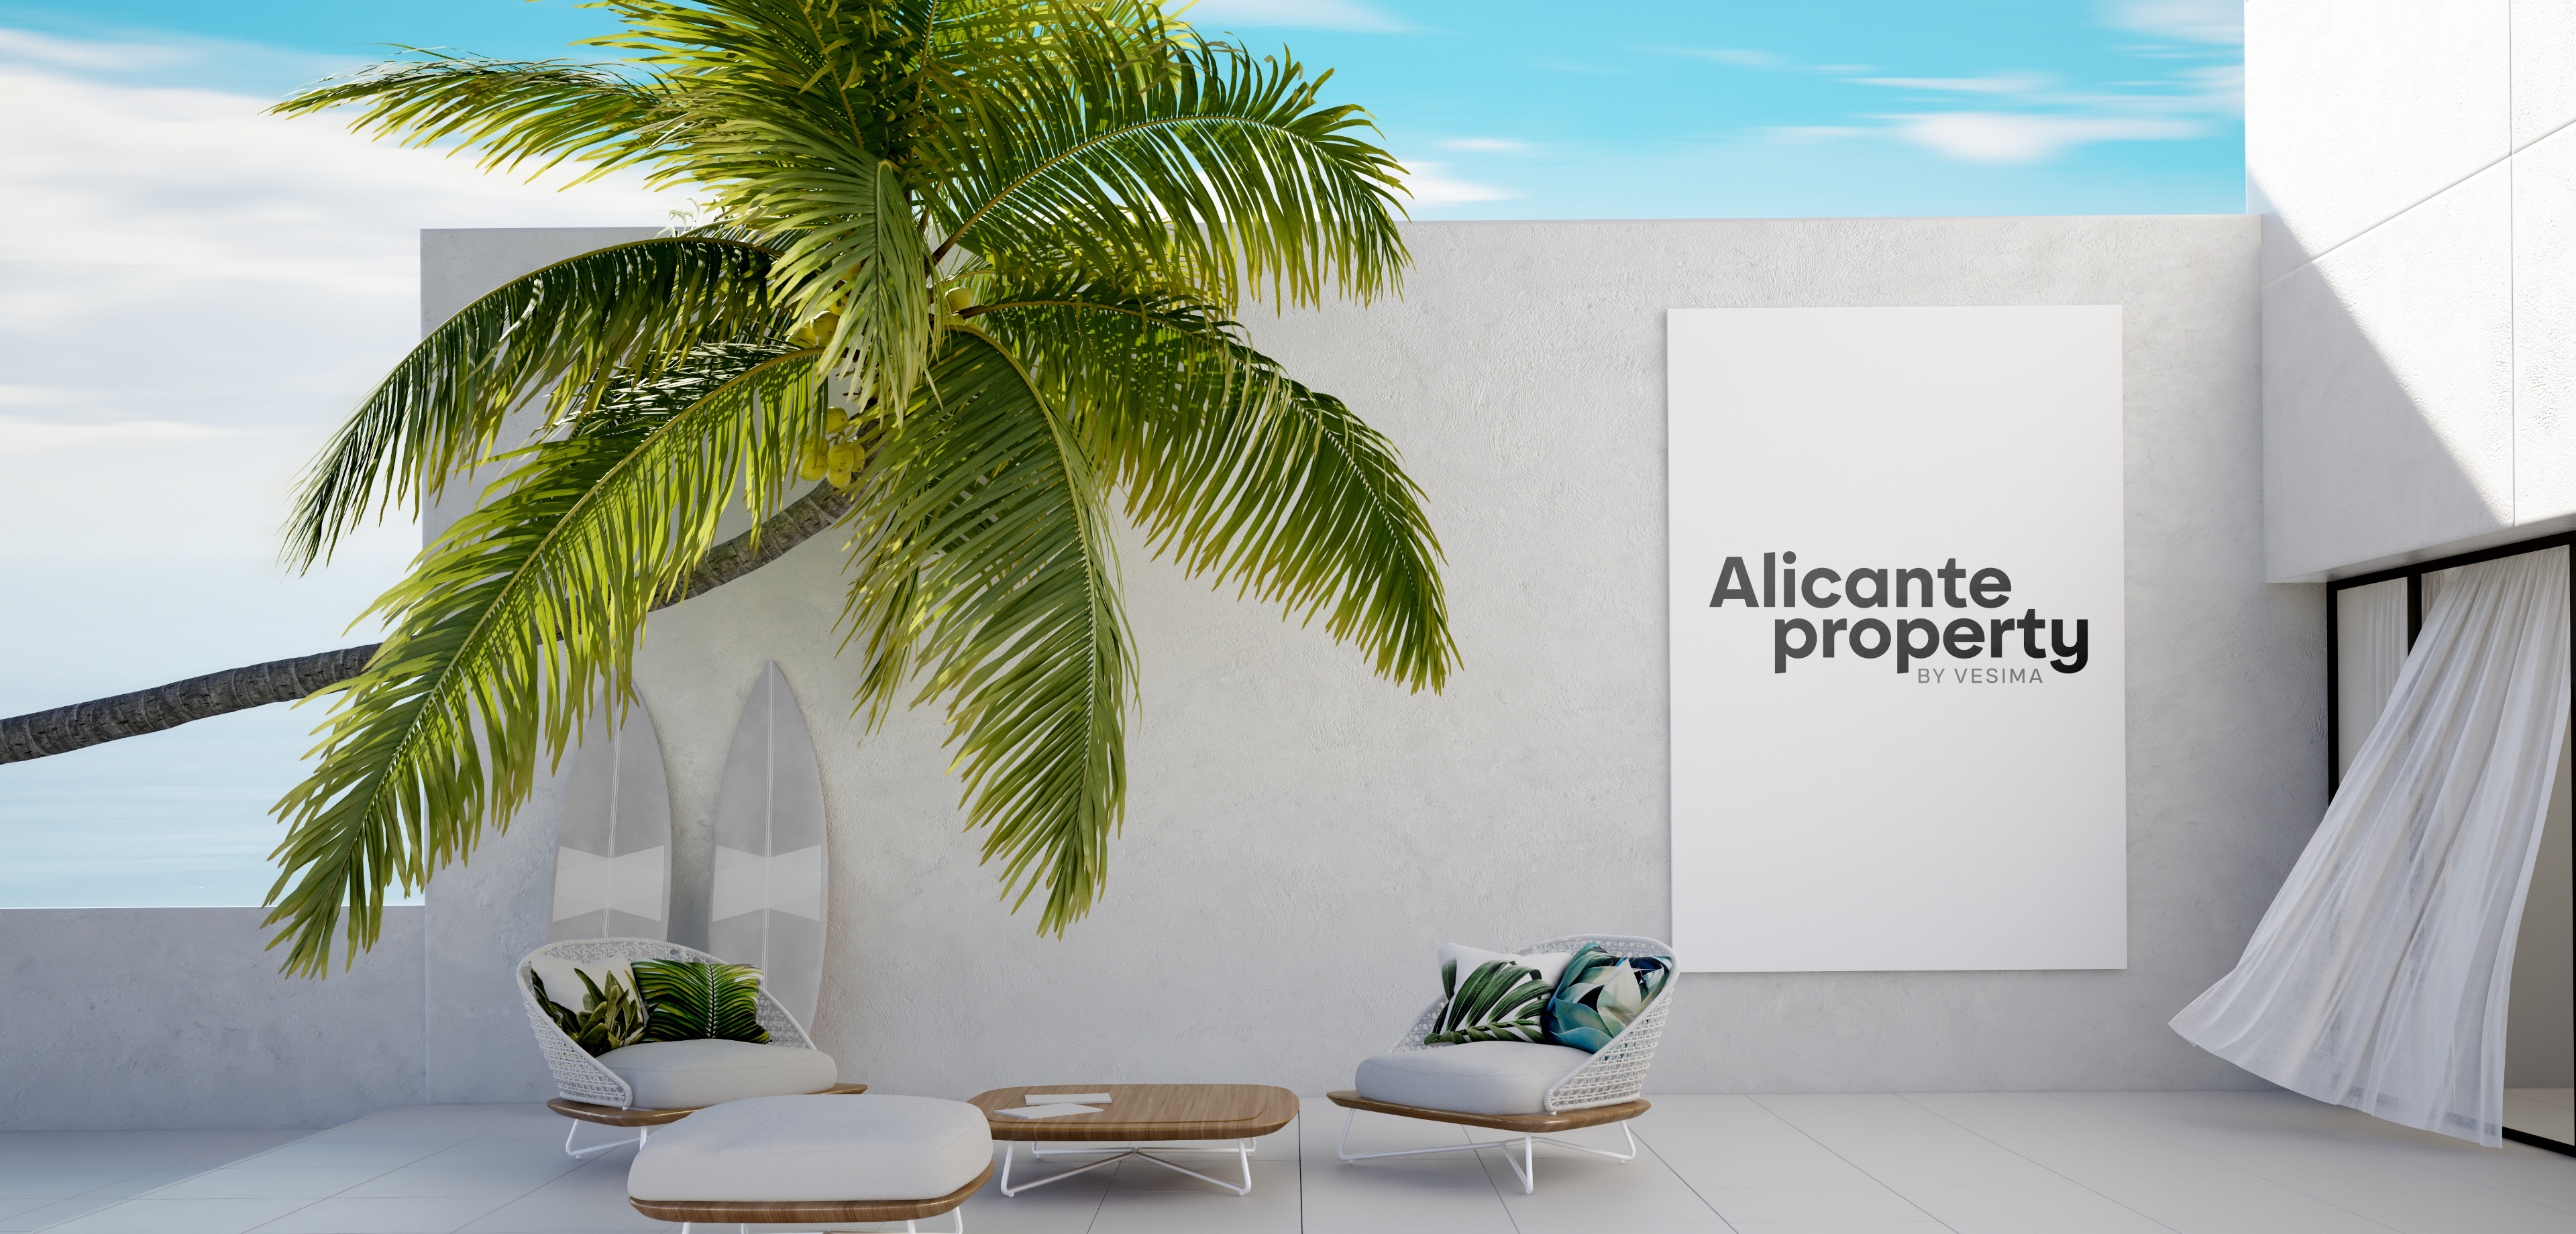 Encuentra tu casa o apartamento en Alicante.